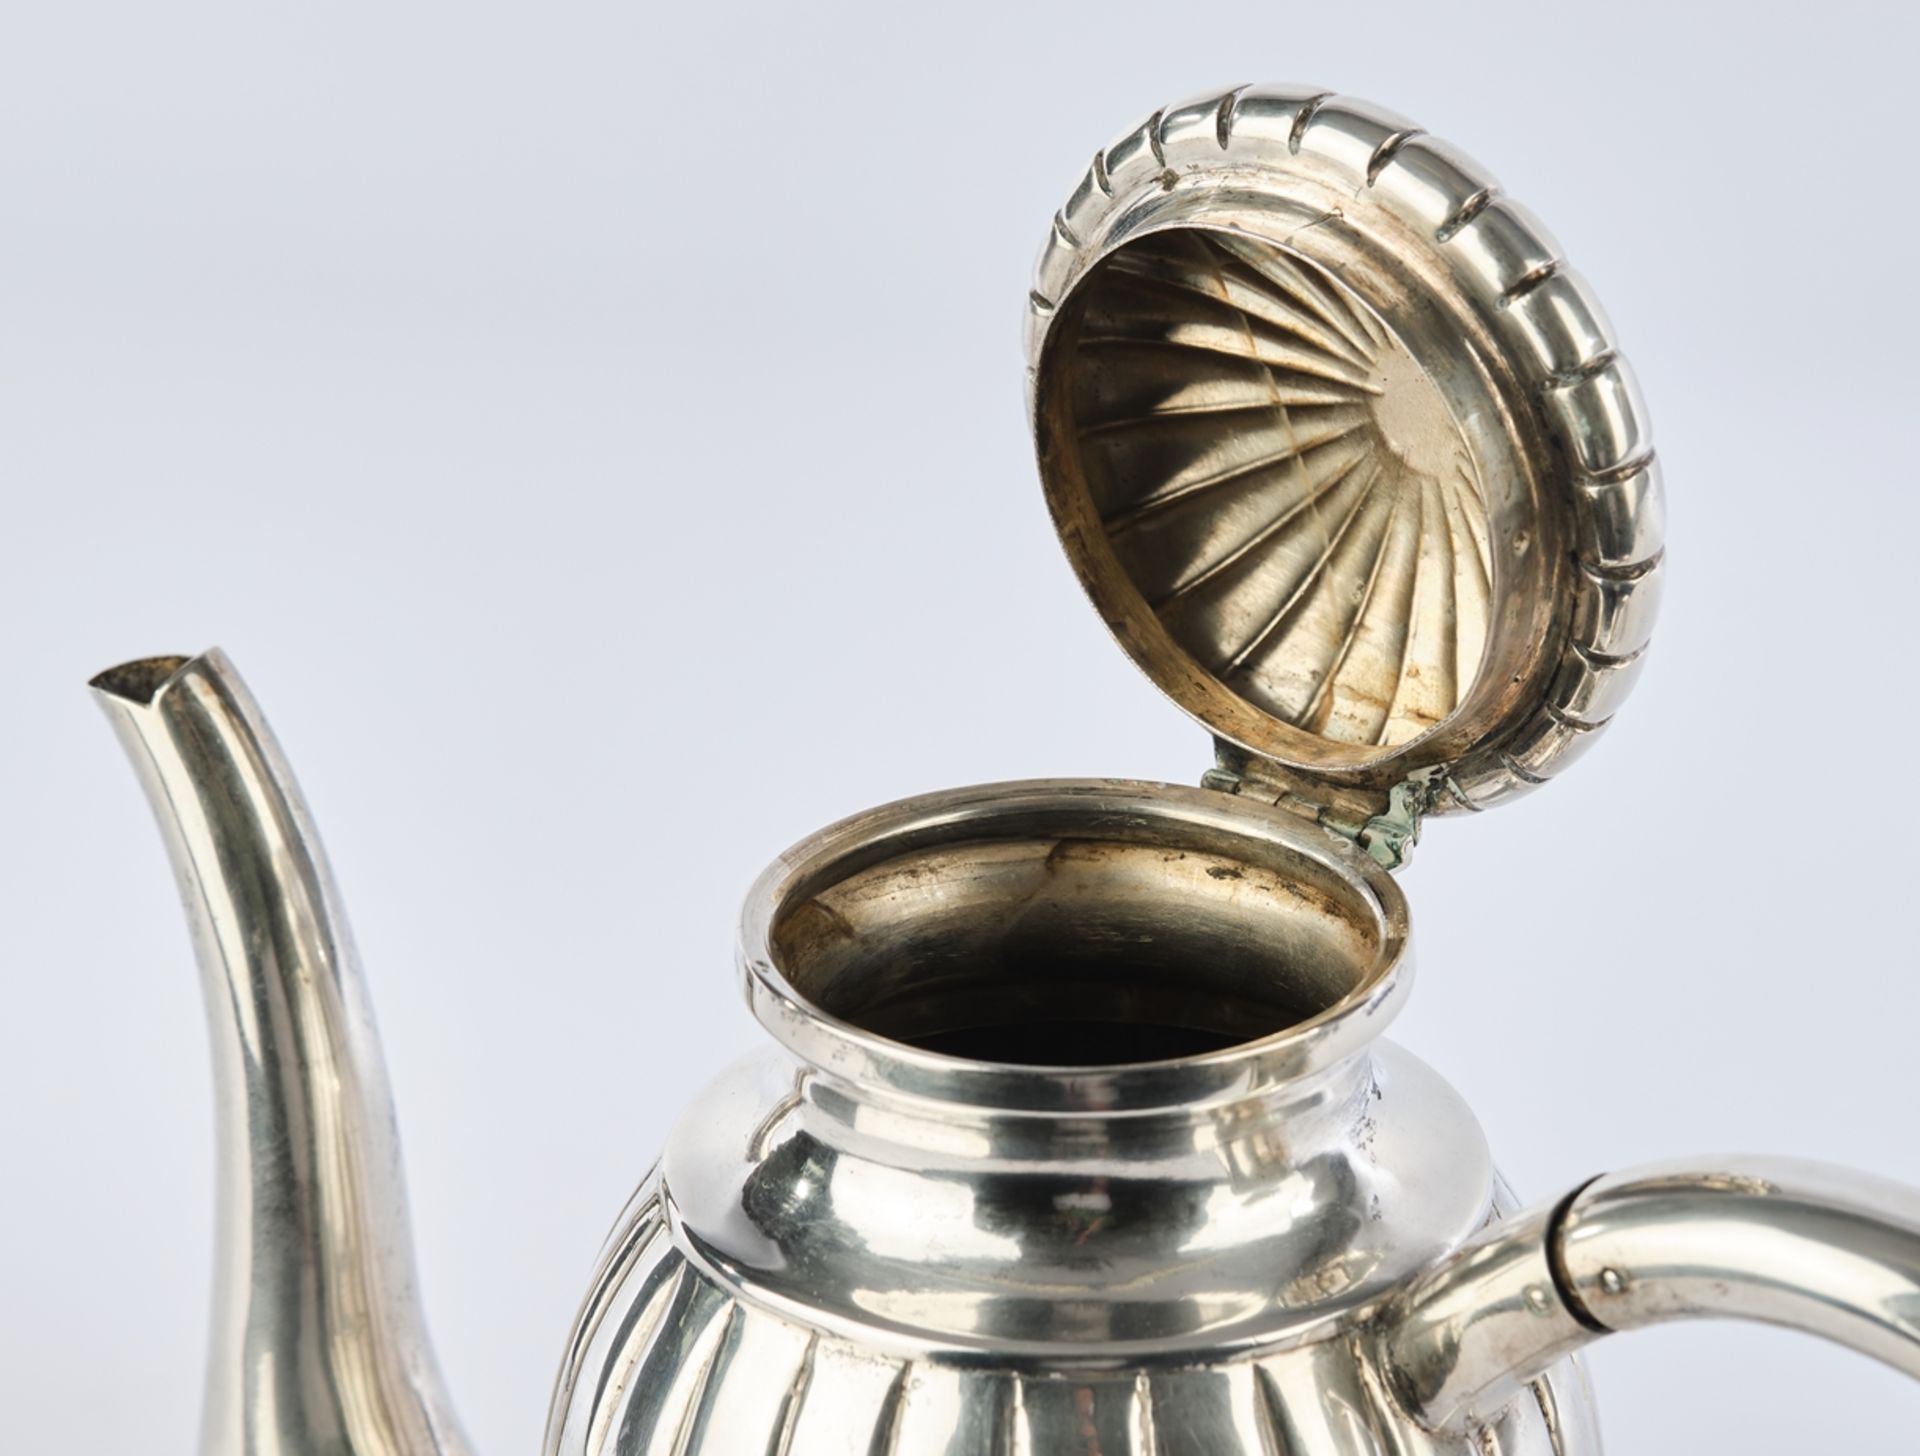 Kaffeekanne, Silber 800, Polen, 1920-1963, ovoider Korpus, Rillendekor, geschwungener Ausguss, Ohre - Bild 3 aus 4